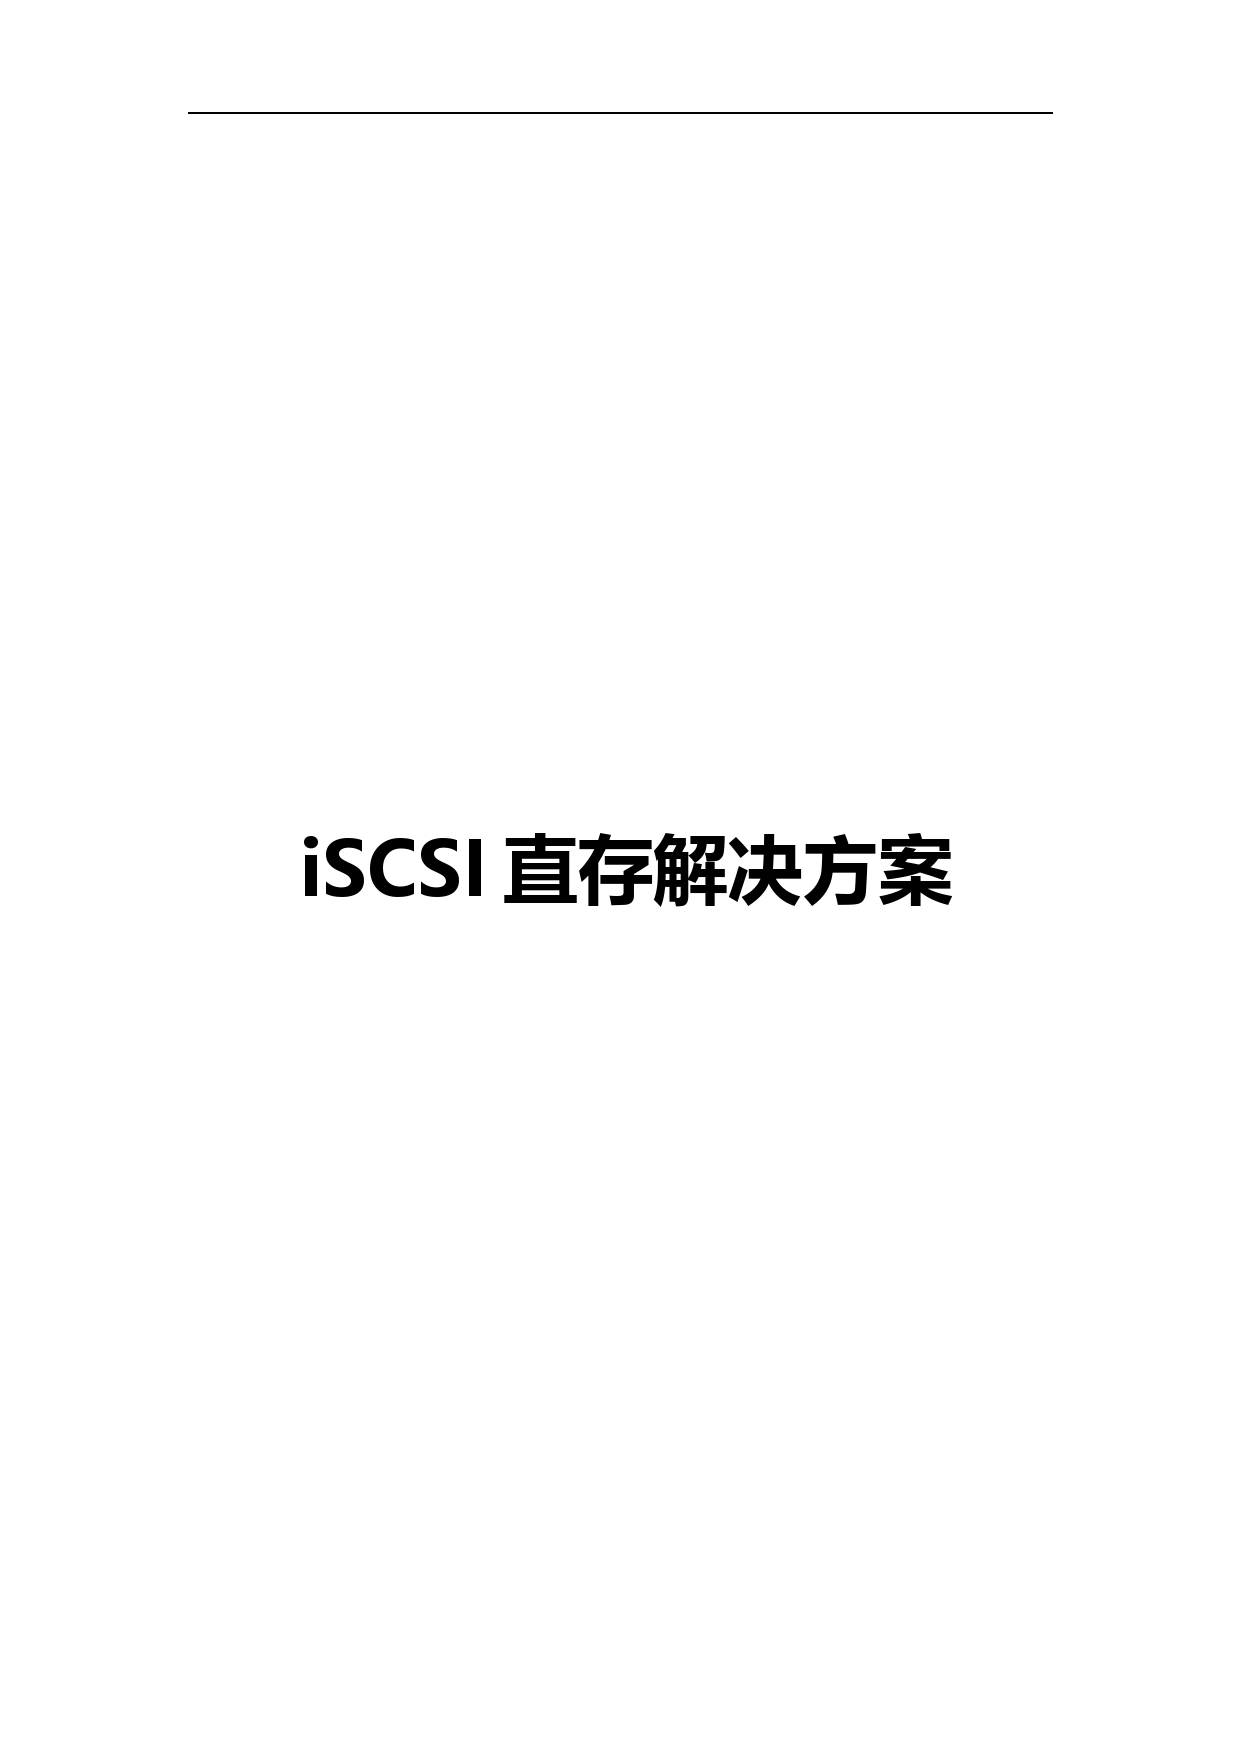 大华iSCSI直存解决方案